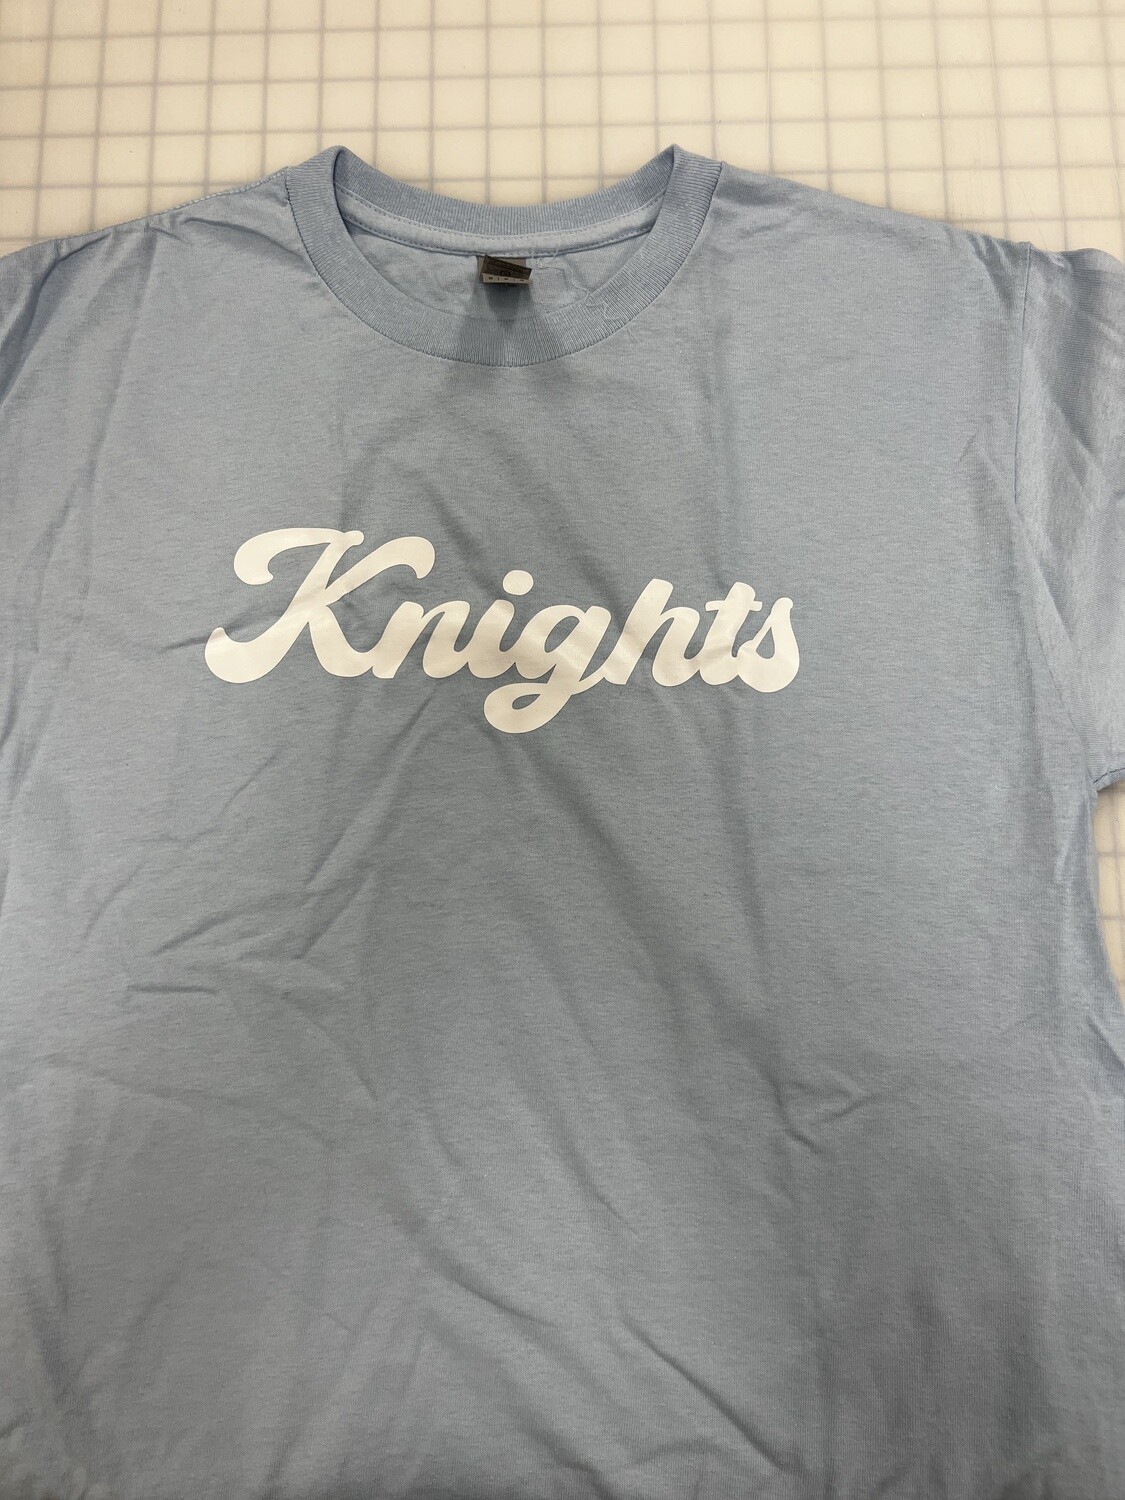 (M) Knights - Short Sleeve Light Blue